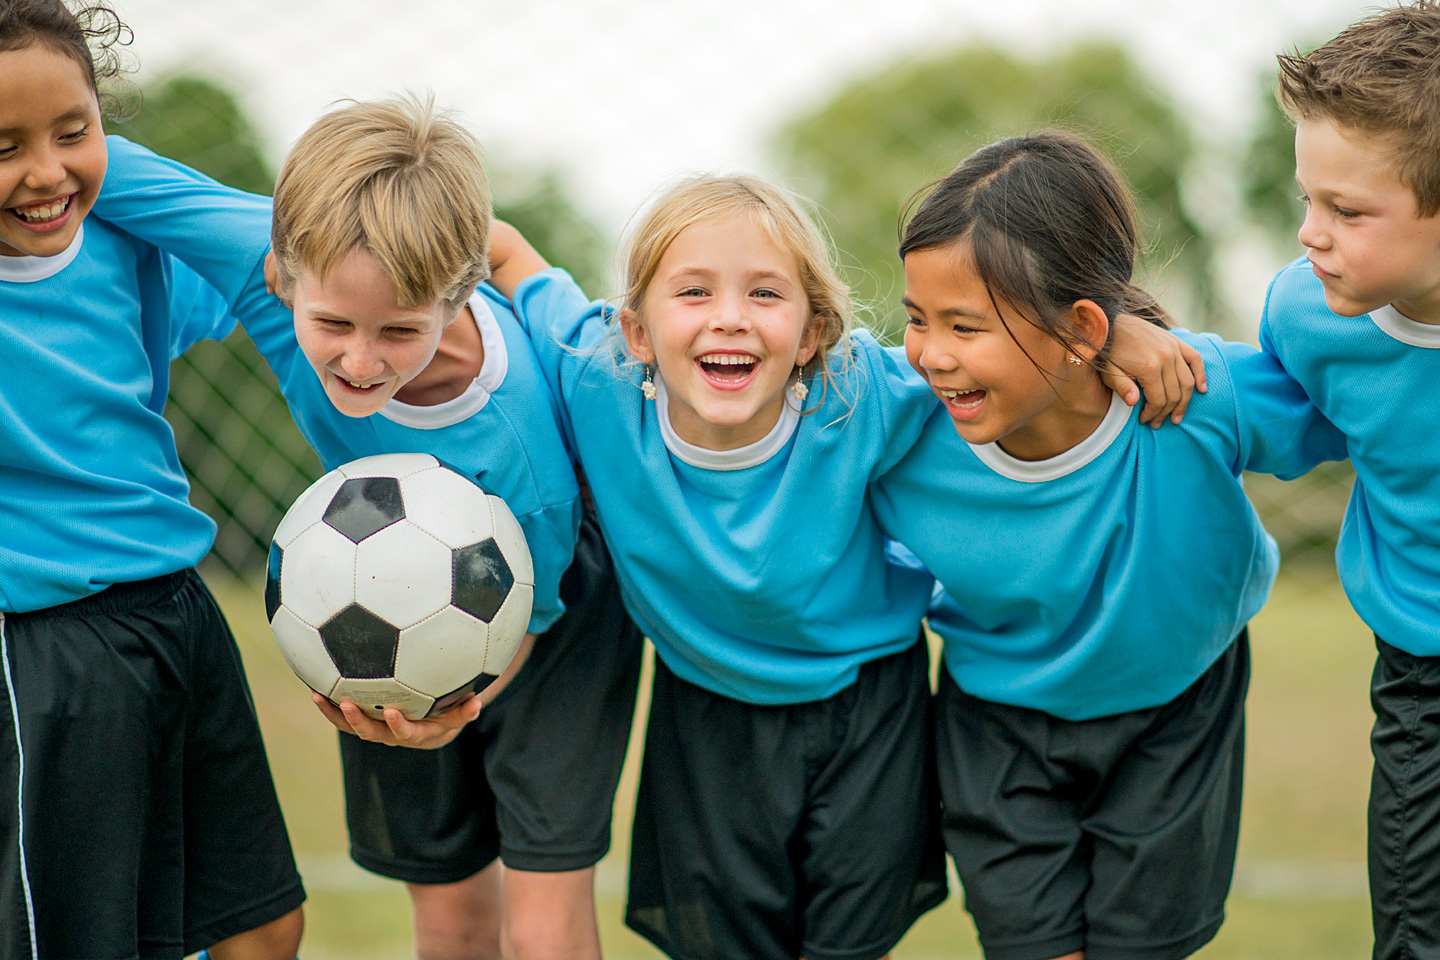 Fünf Fußball spielende Kinder umarmen sich und lachen.